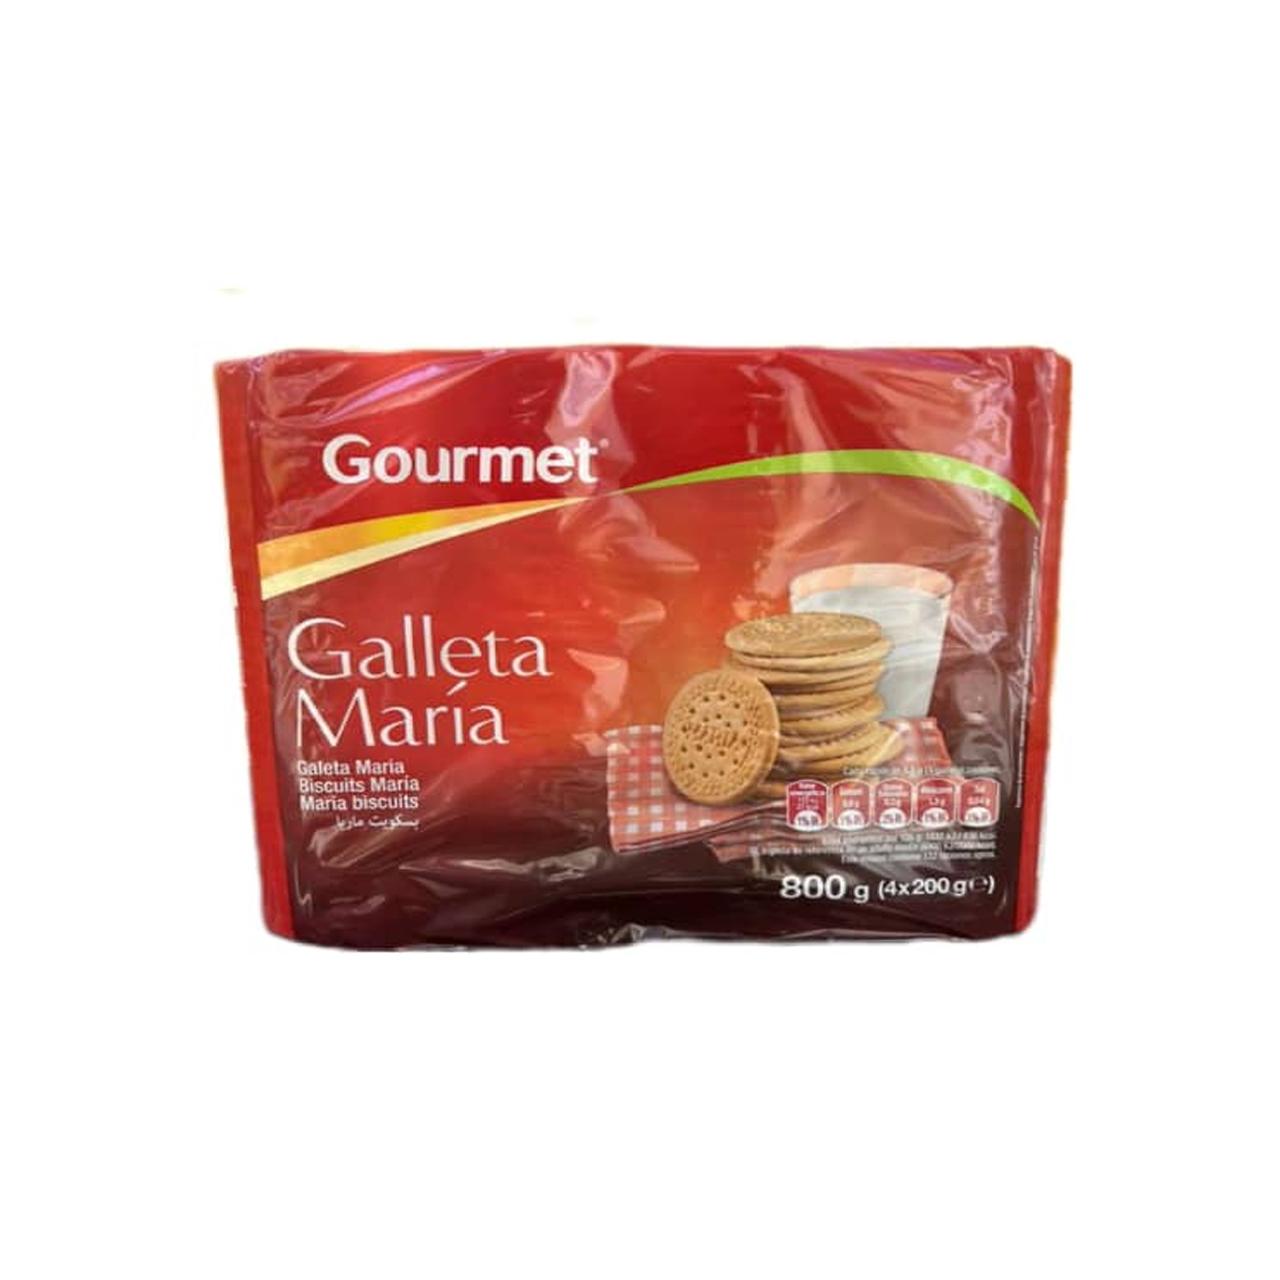 Galletas Maria Gourmet (4 X 800gr / 28.2 OZ)